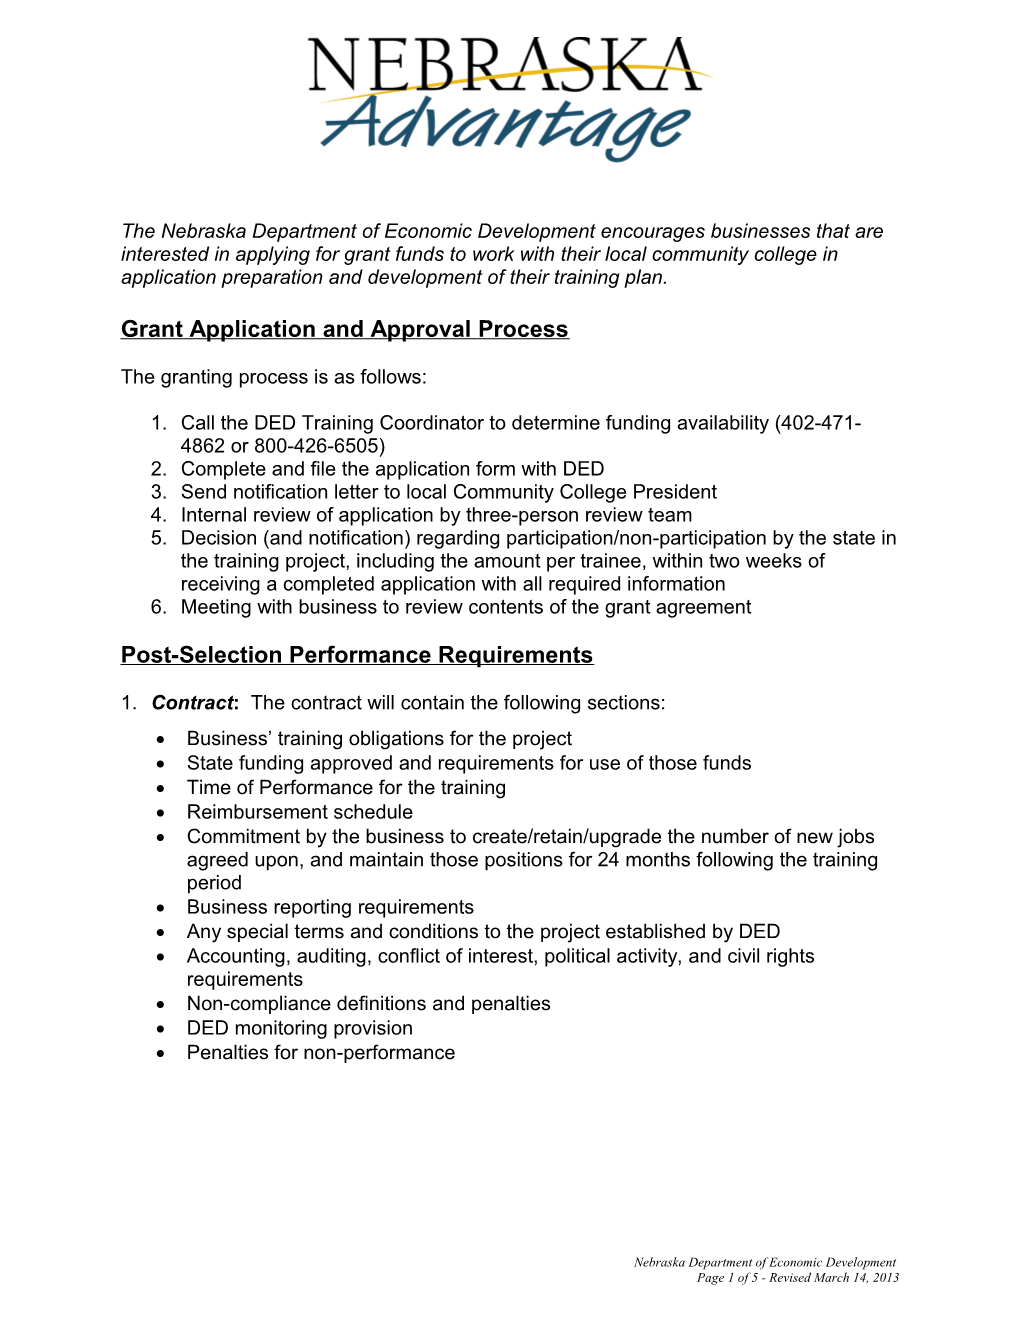 Nebraska Job Training Grant Application